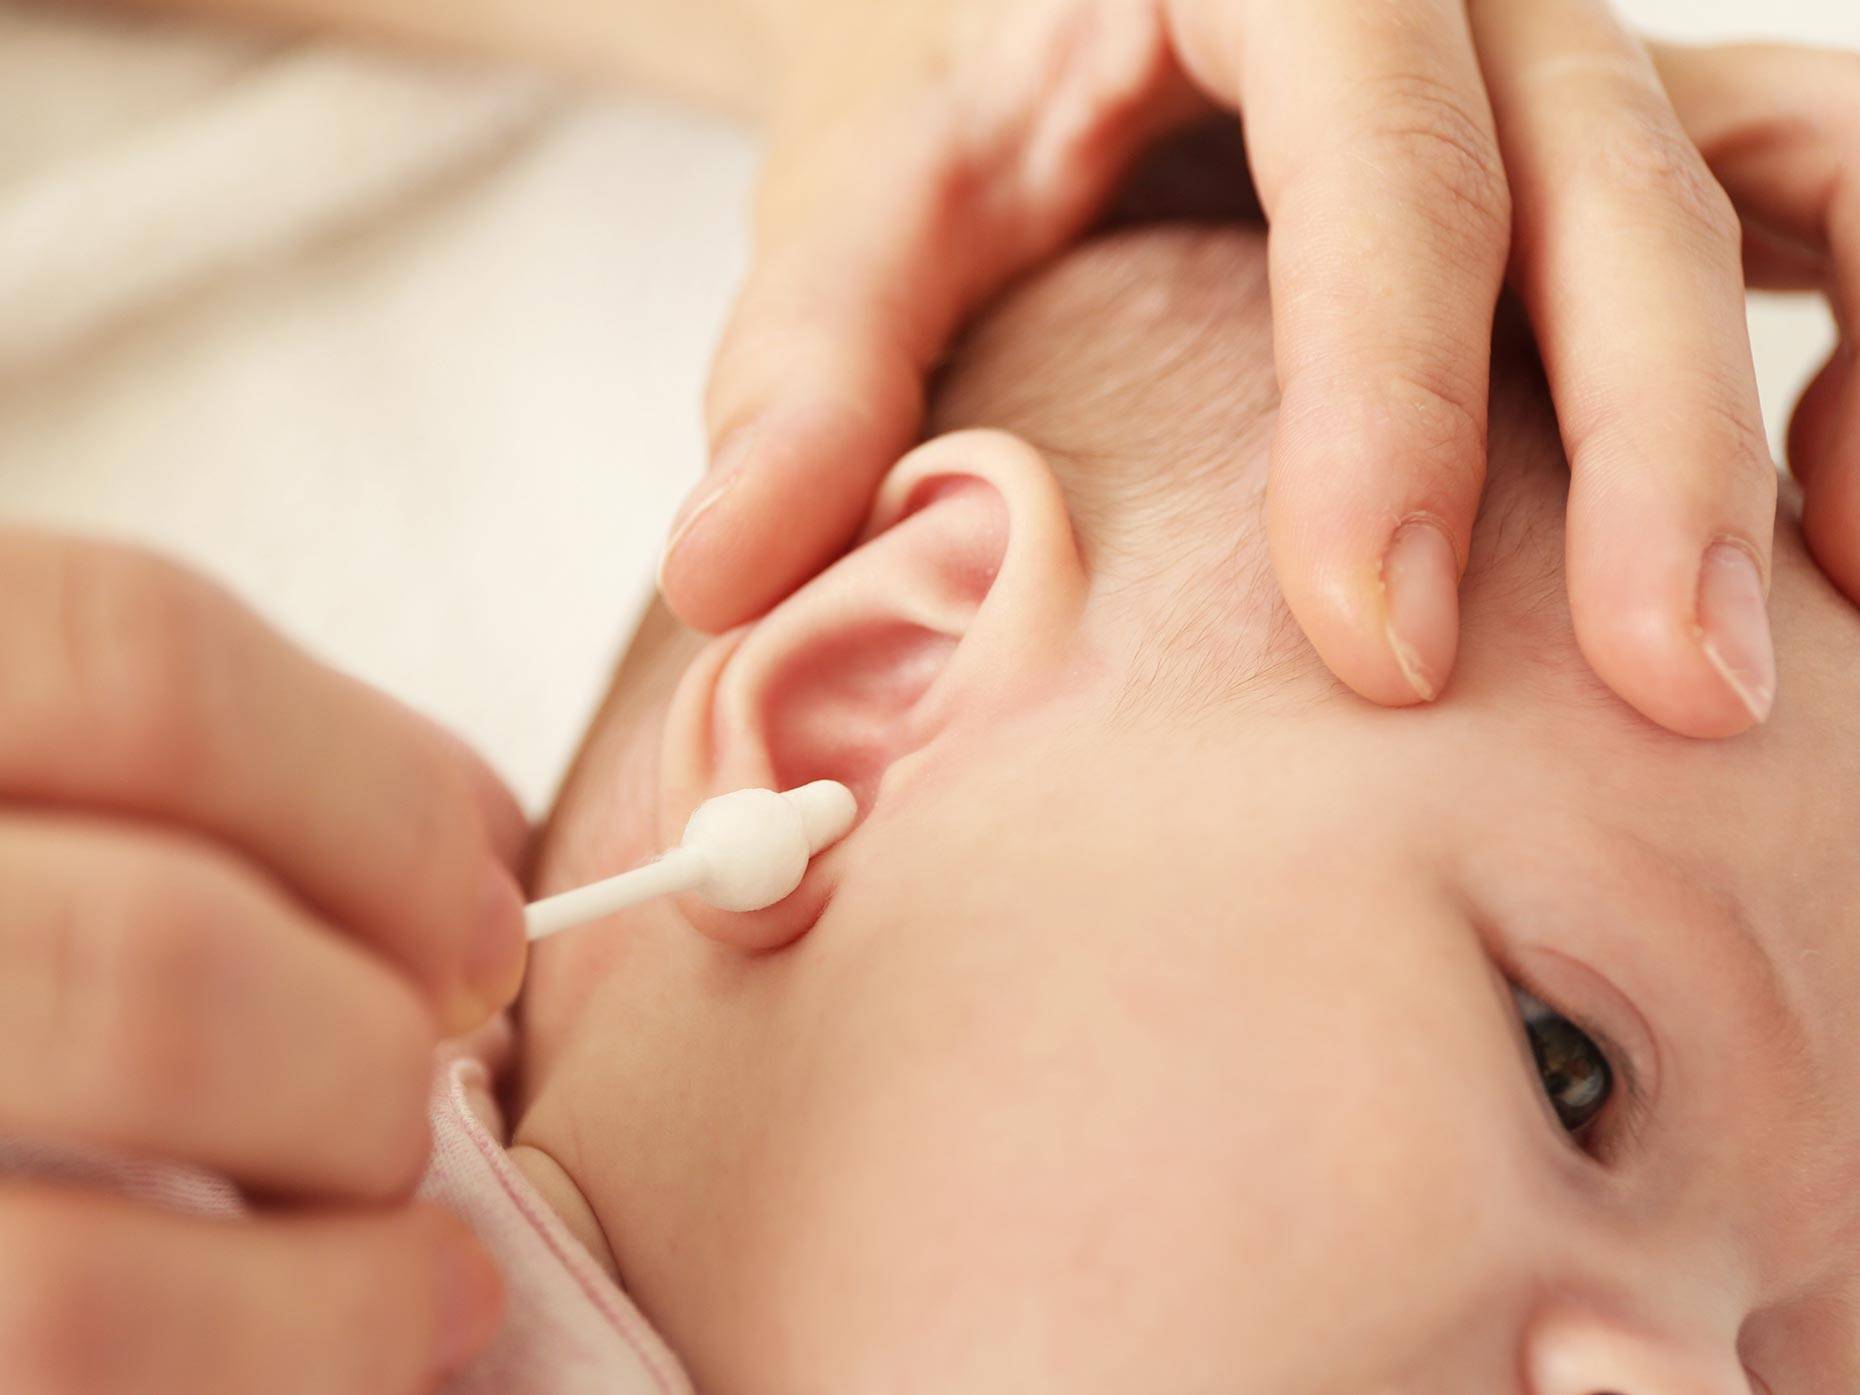 Уход за ушами новорожденного